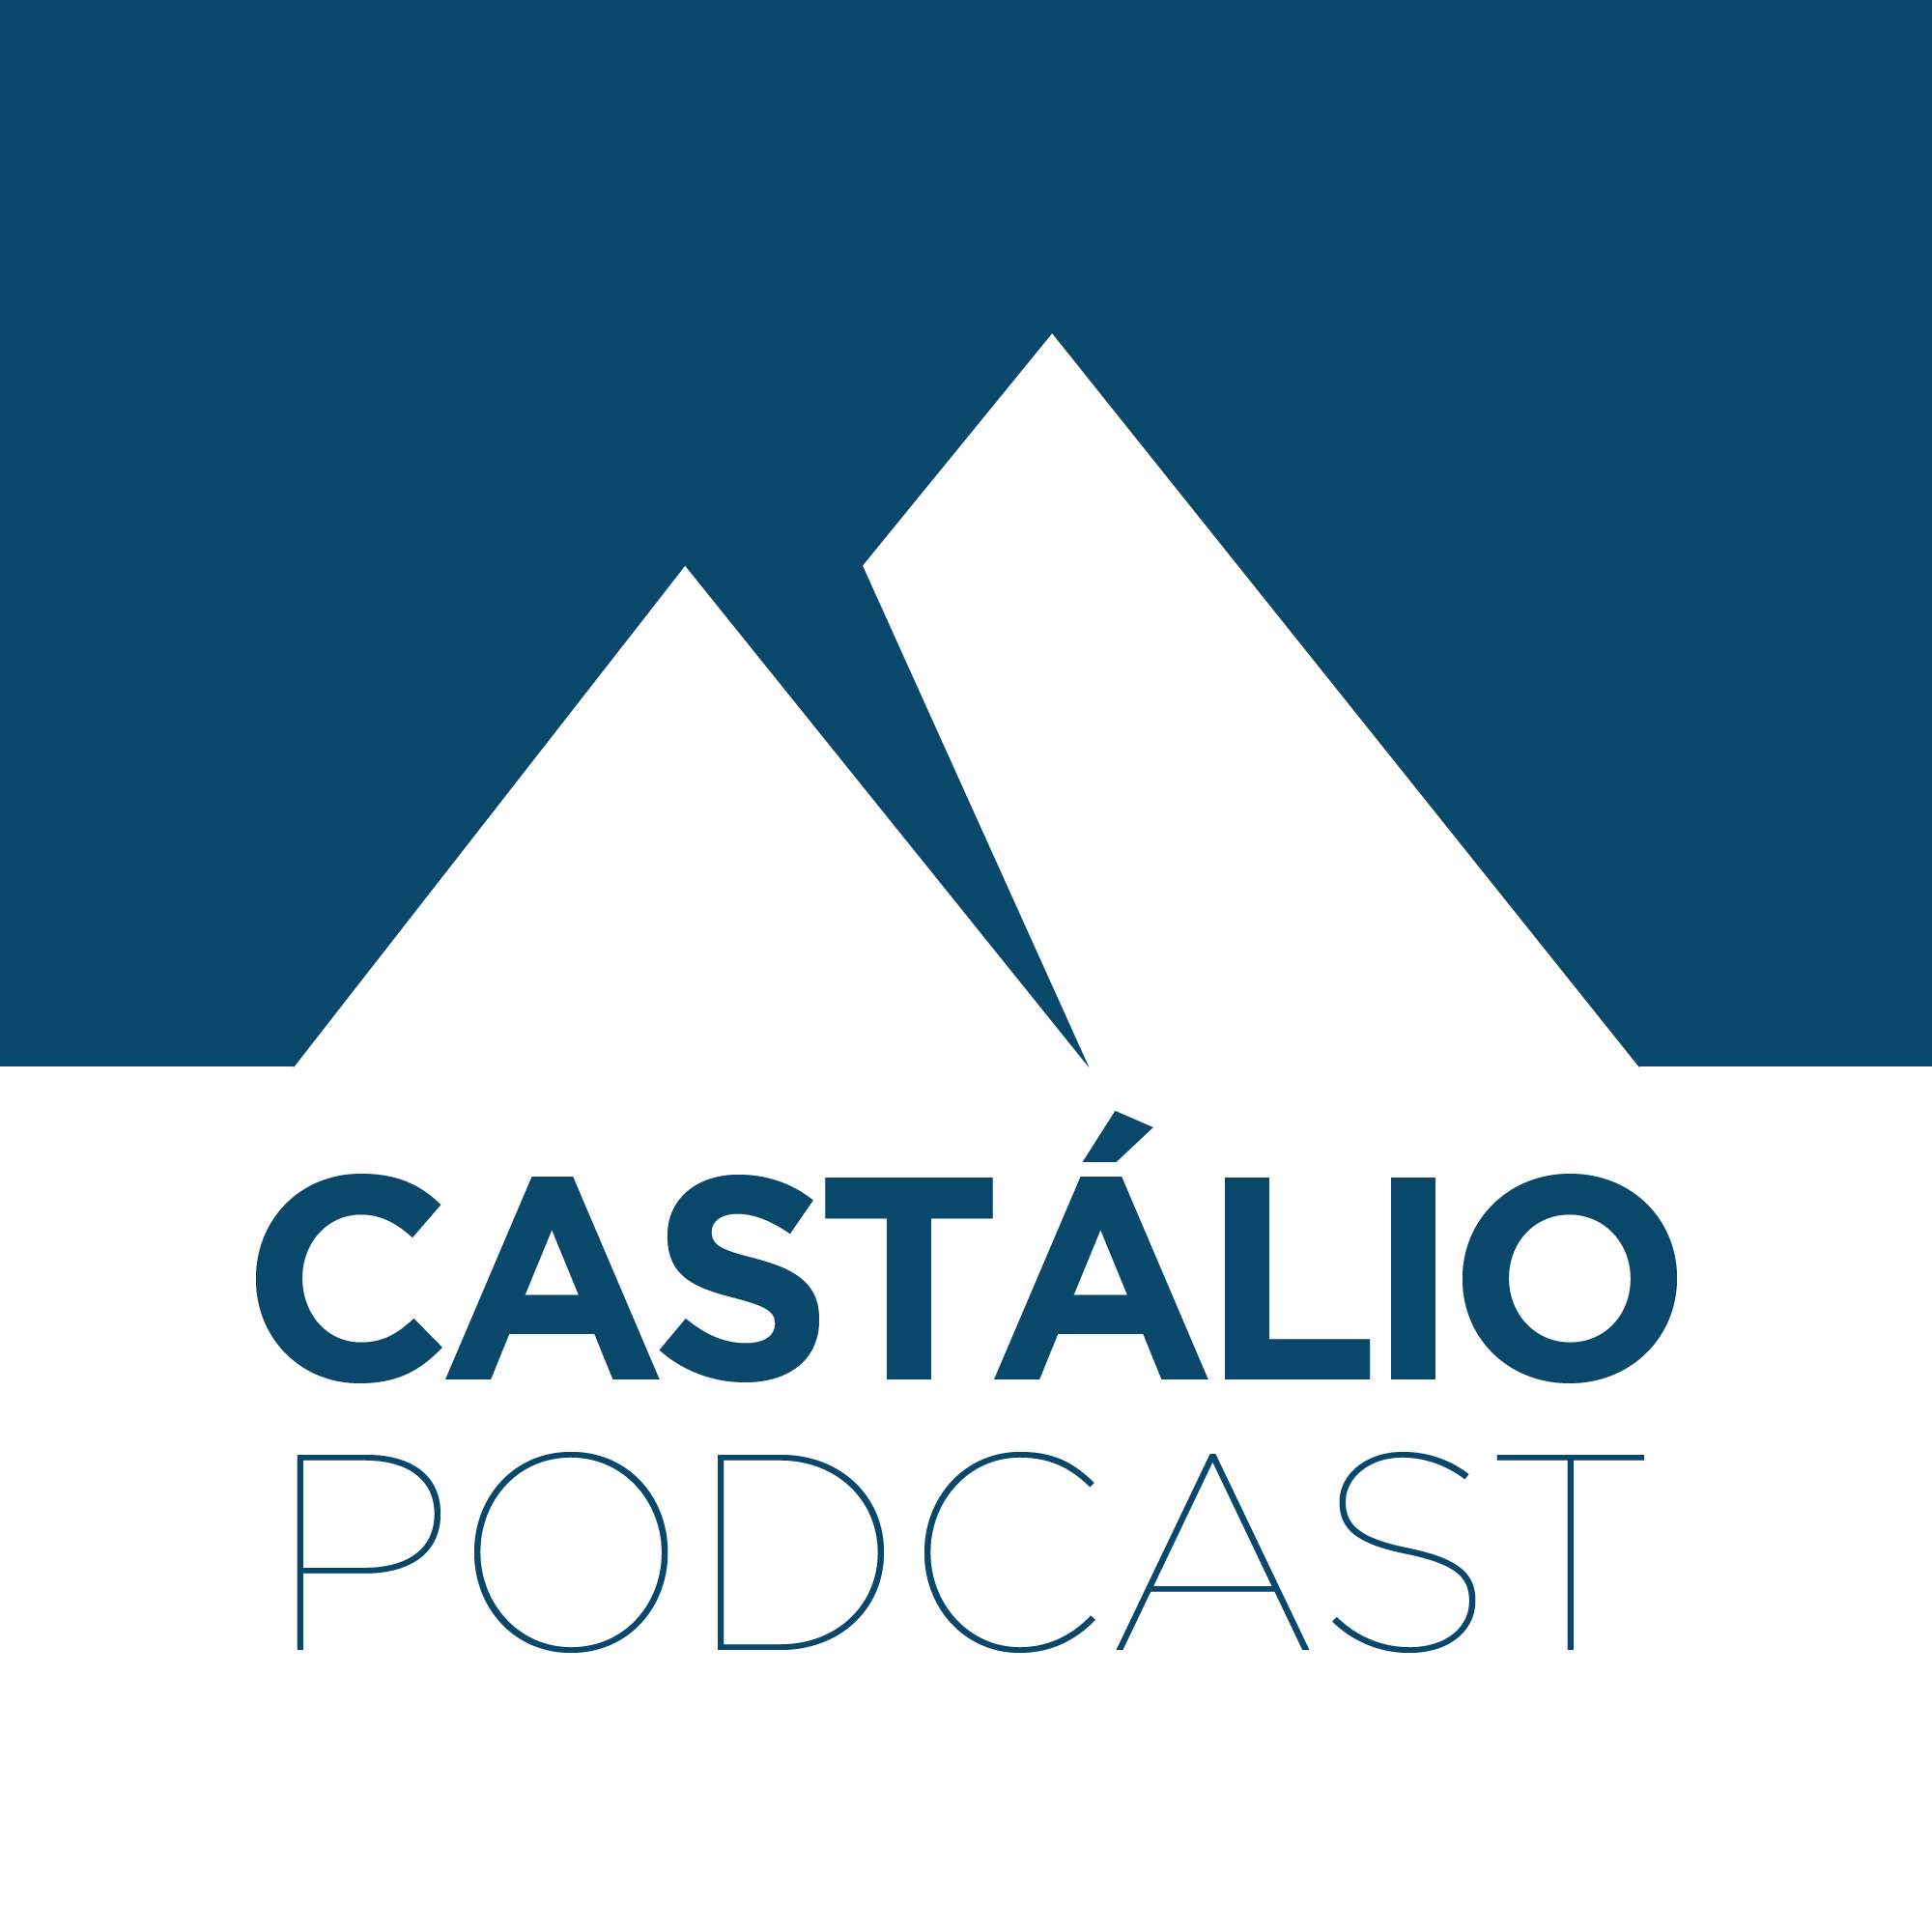 Castálio Podcast:Castálio Podcast